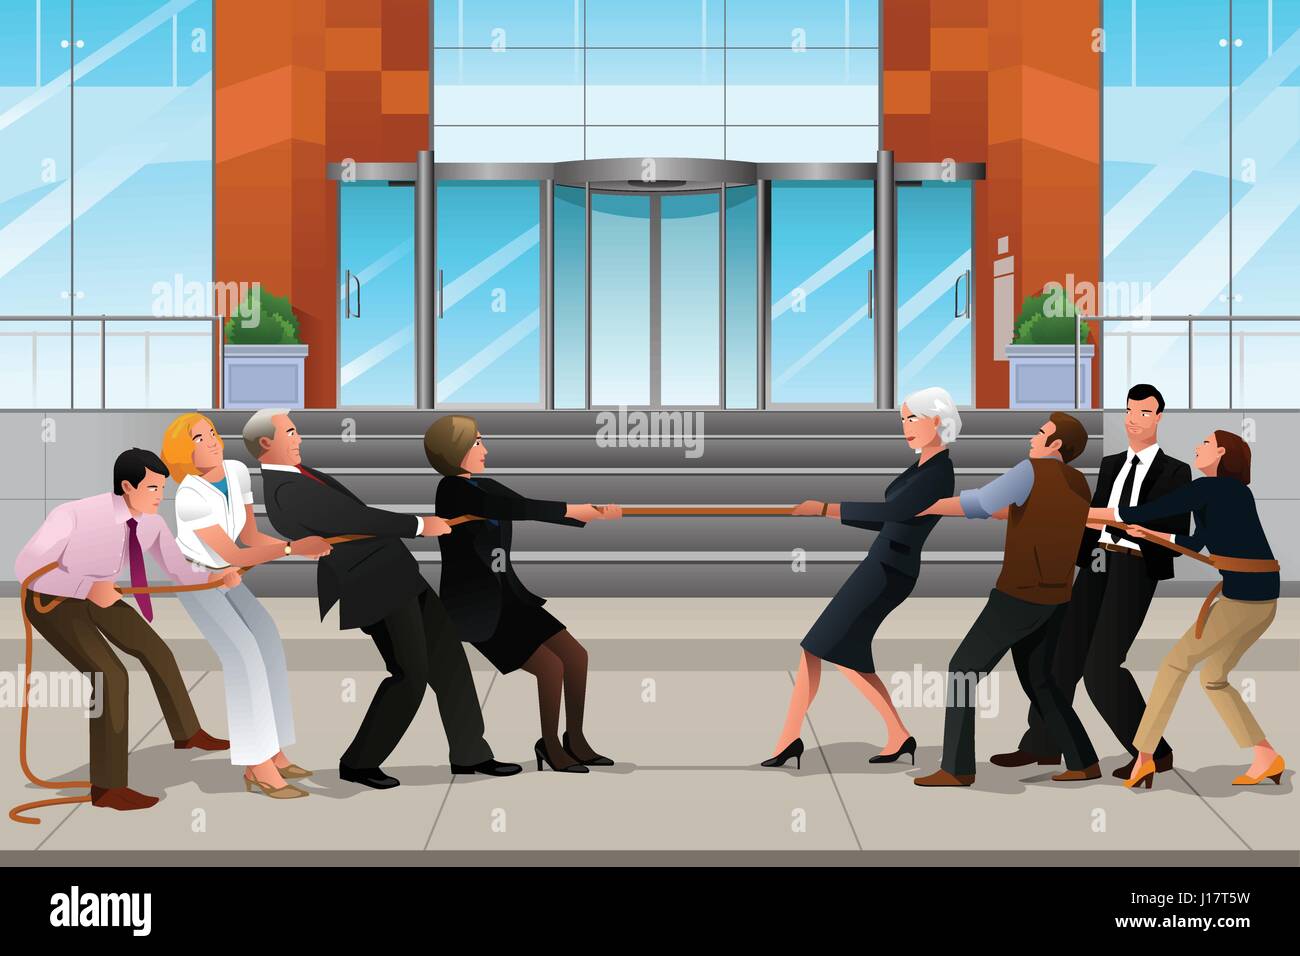 Eine Vektor-Illustration von Geschäftsleuten in einem Tauziehen für Teamwork Konzept Stock Vektor